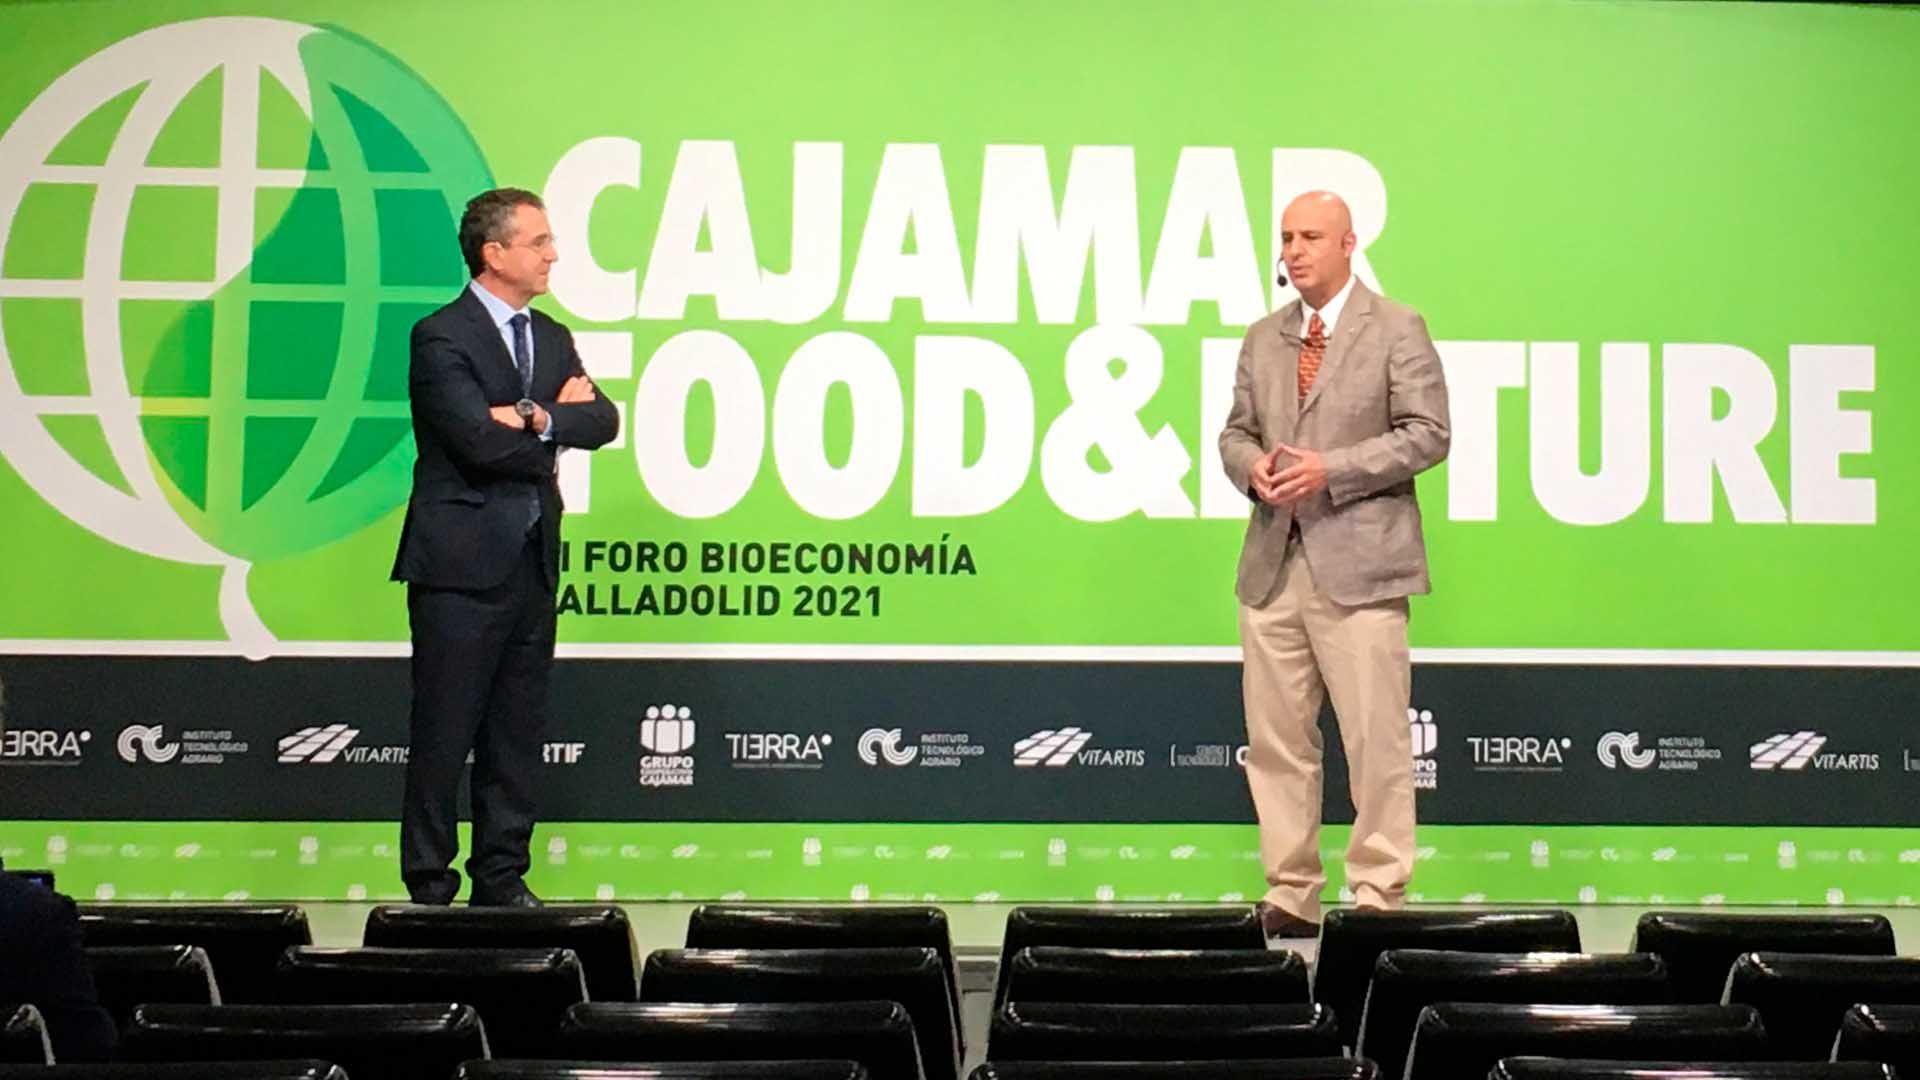 VI Foro Bioeconomía Cajamar en Valladolid 2021